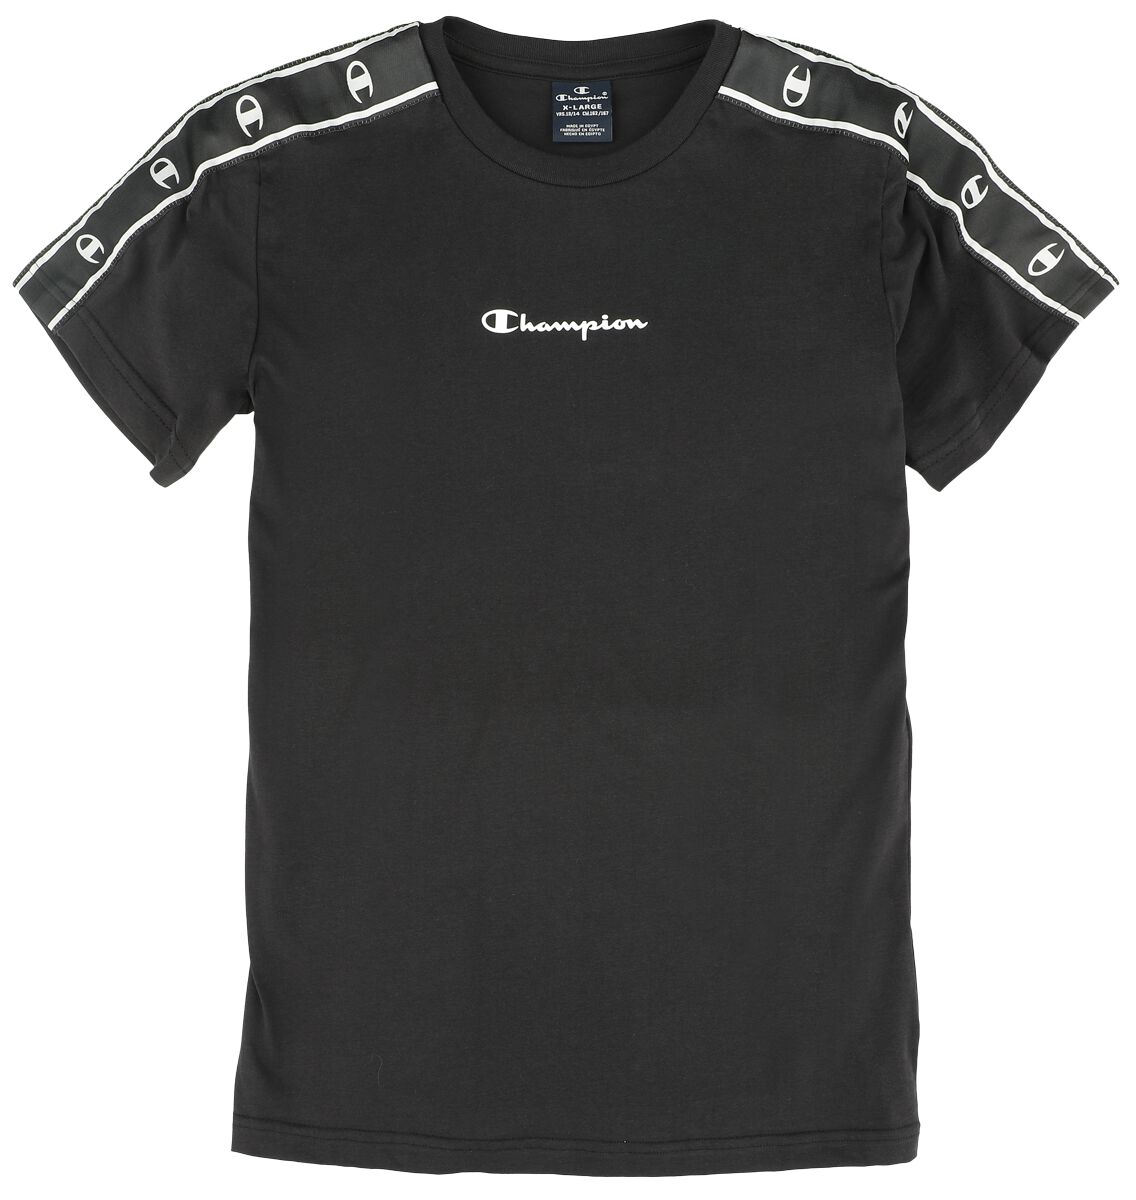 Champion T-Shirt für Kinder - Legacy Tee - für Jungen - schwarz